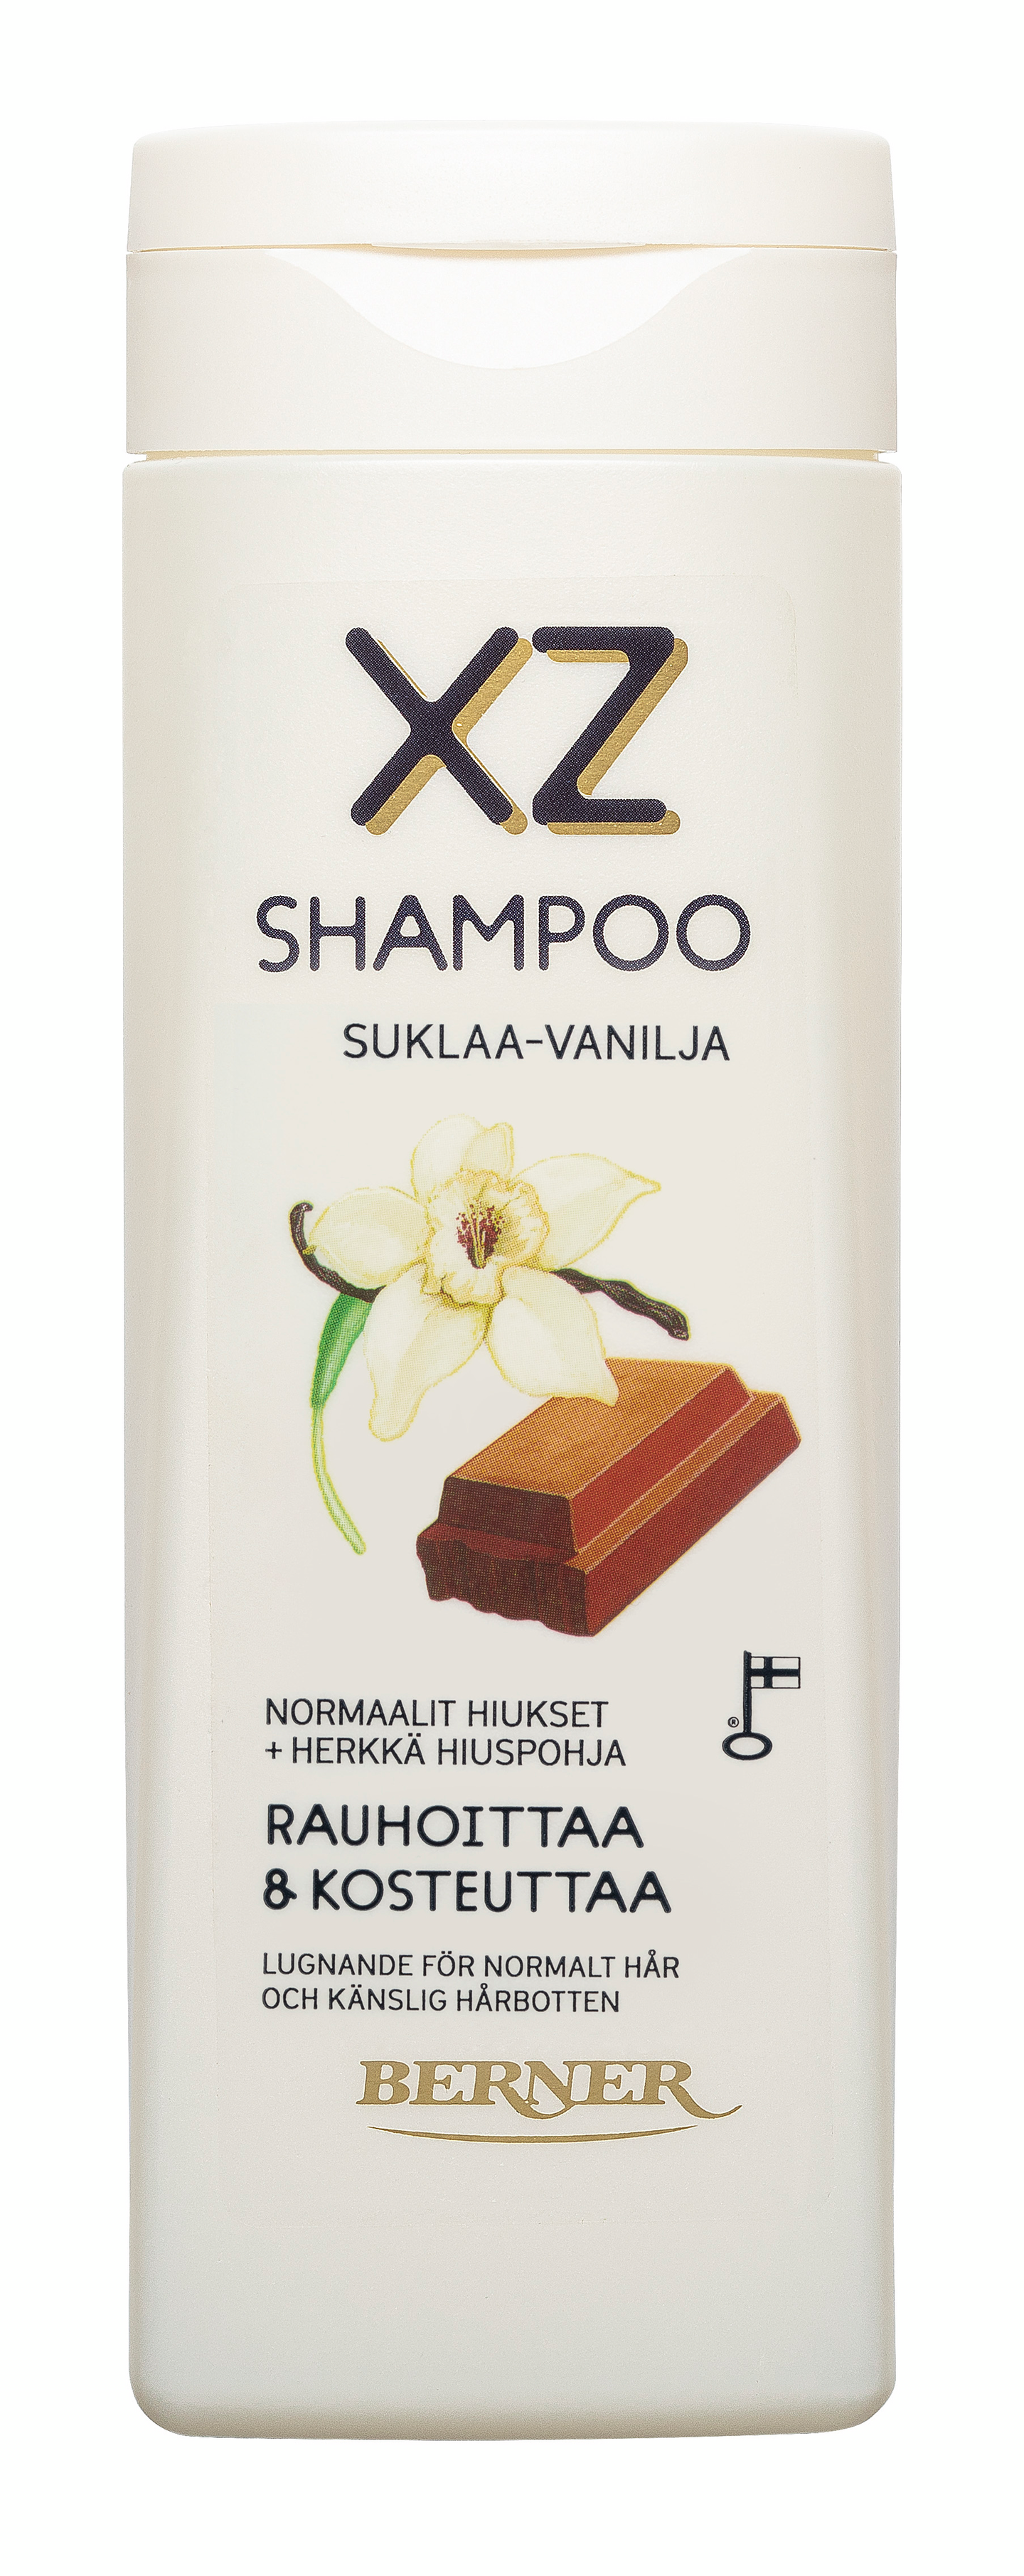 XZ suklaa-vanilja shampoo 250ml rauhoittaa ja kosteuttaa